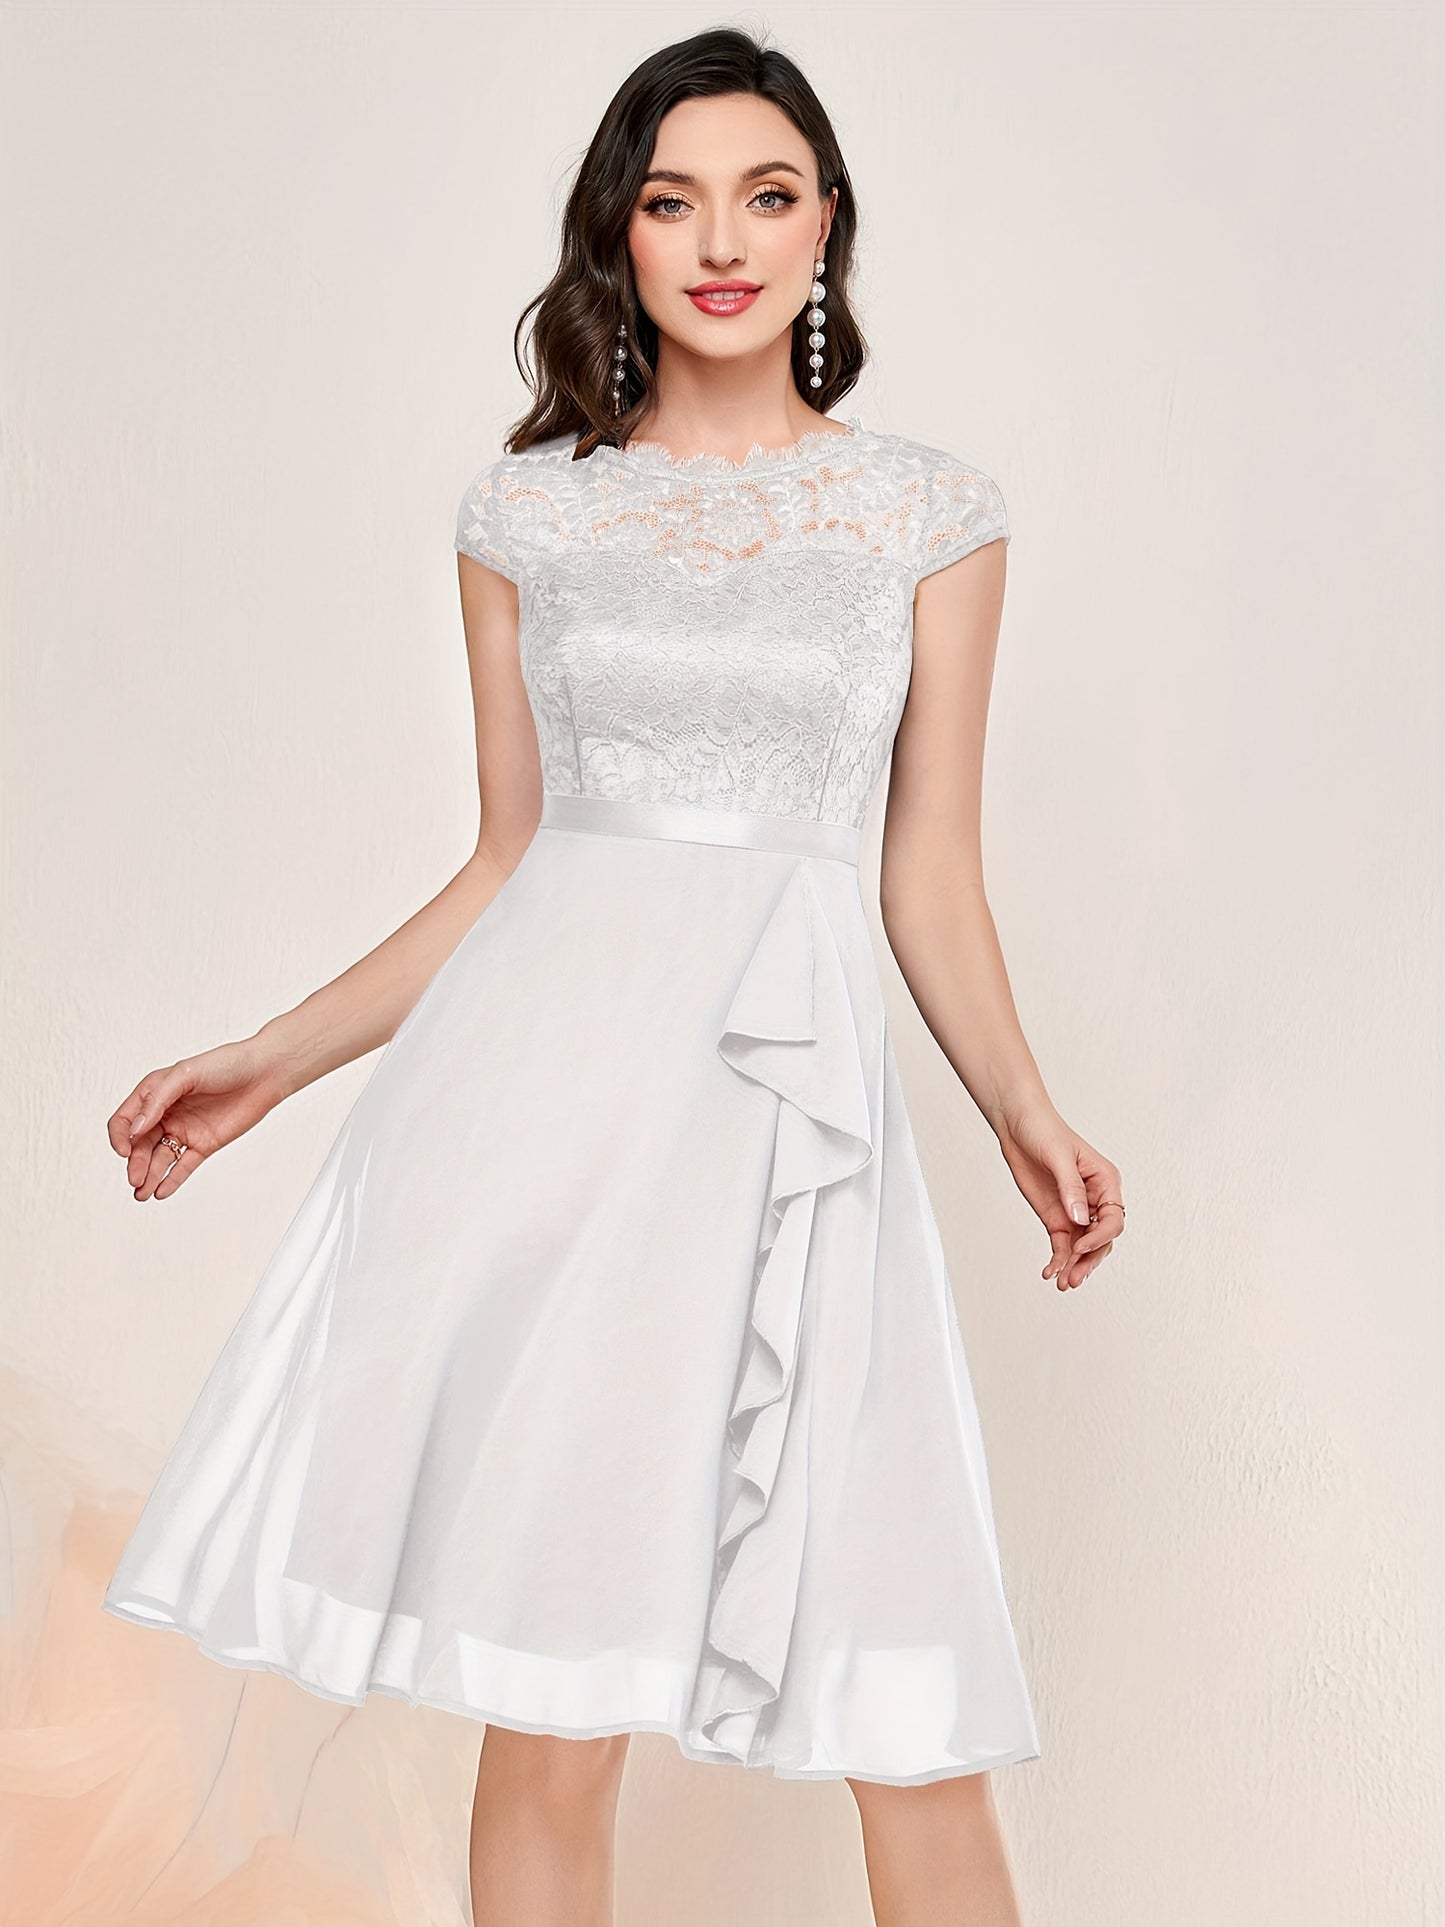 Kontrast Spitze Rüschenbesatz Elegantes Einfarbiges Rundhals Kurzarm Hochzeitskleid